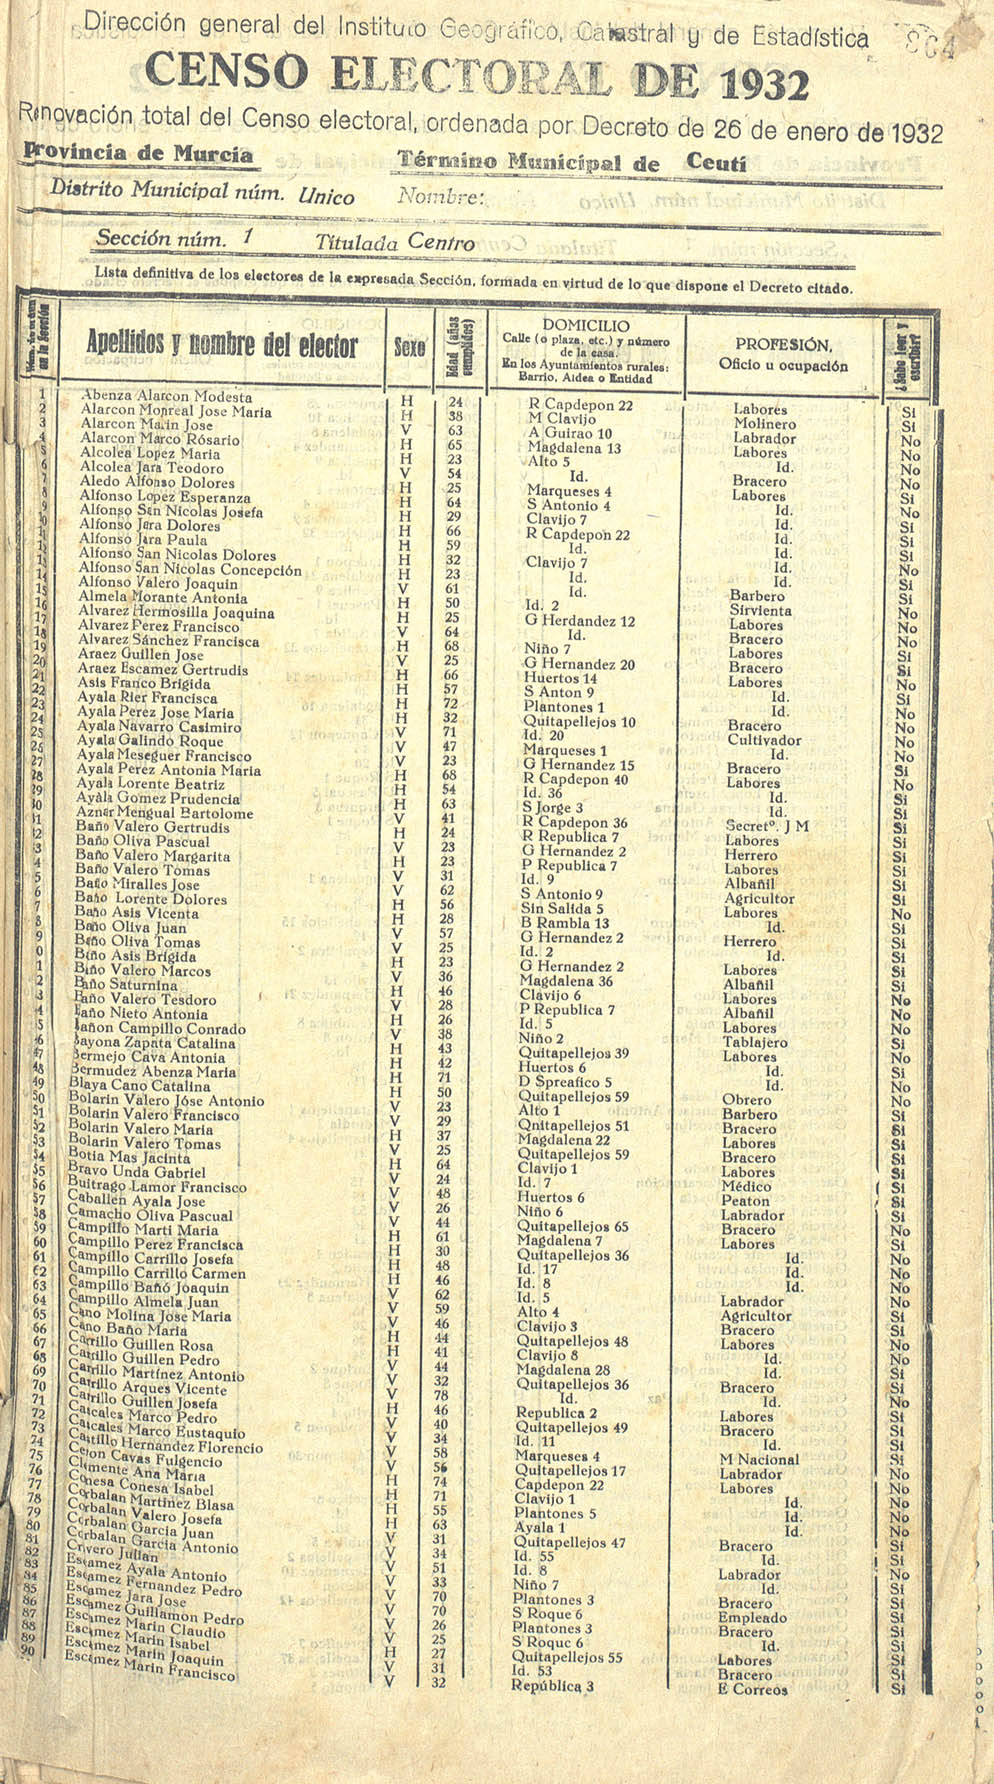 Censo electoral provincial de 1932. Listas definitivas de Ceutí, formadas en virtud del Decreto de 26 de enero de 1932.